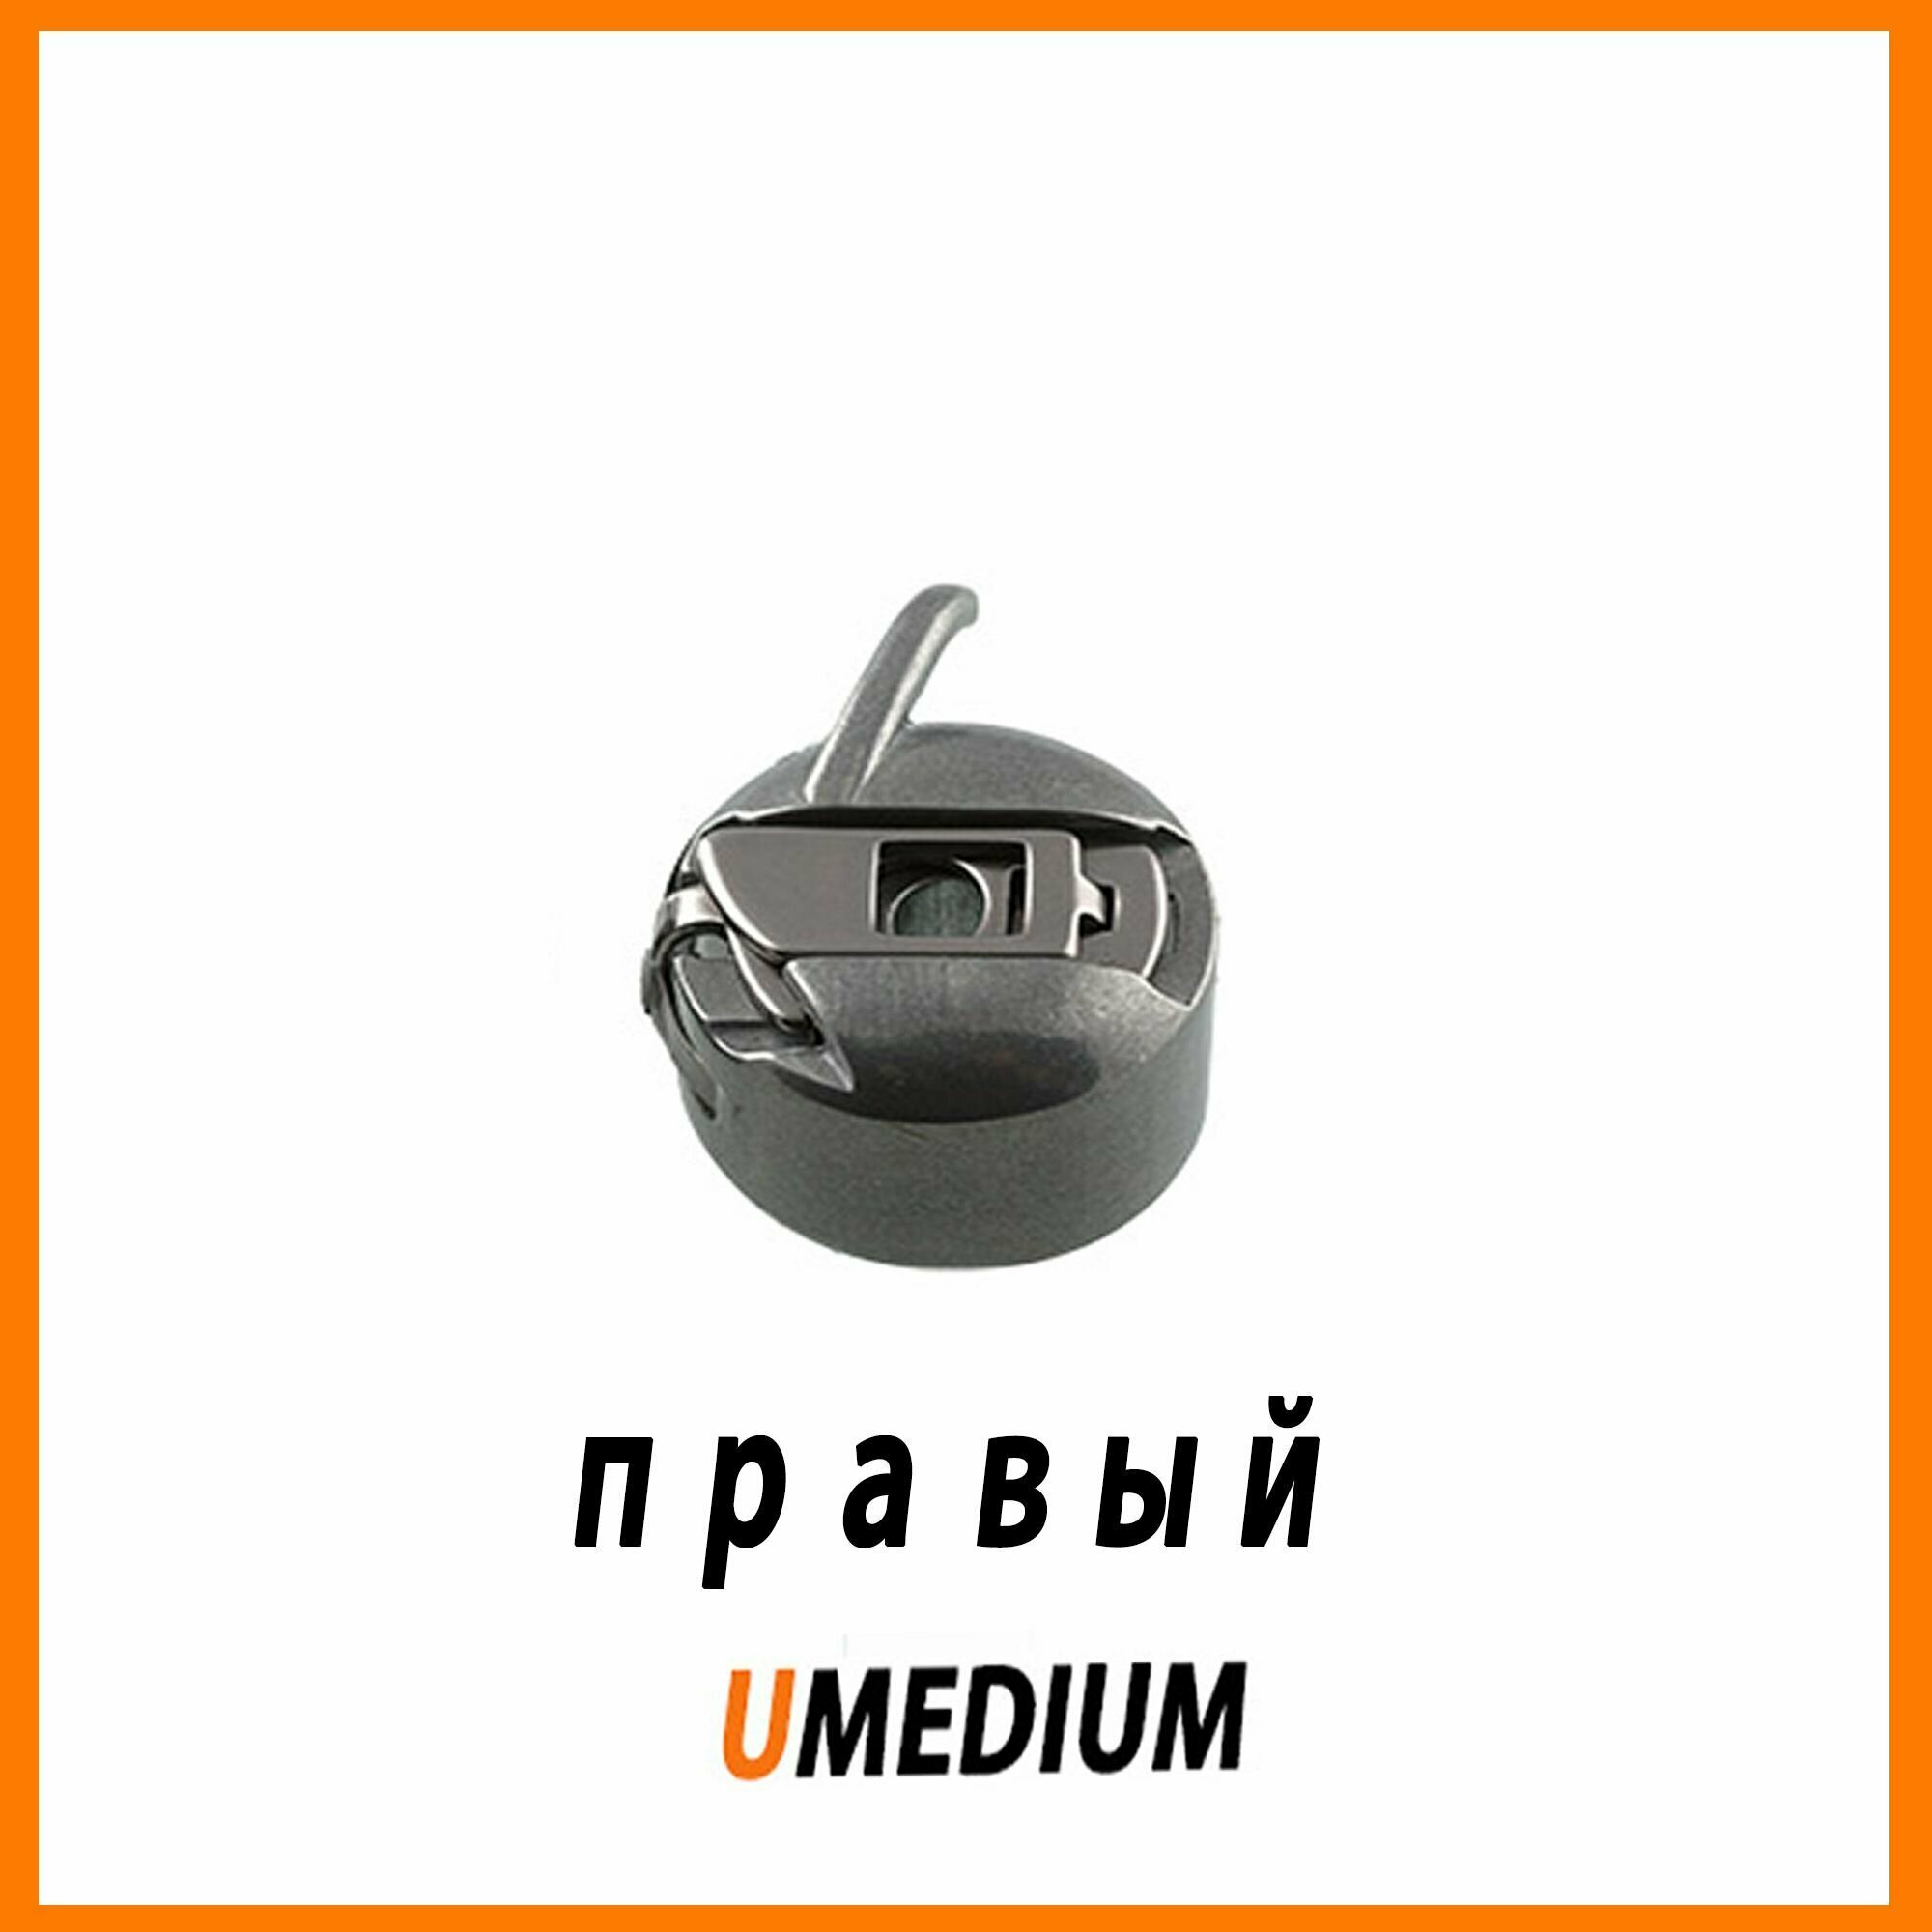 UMEDIUM / Шпульный колпочек правый / Шпульный колпачок для швейной машины